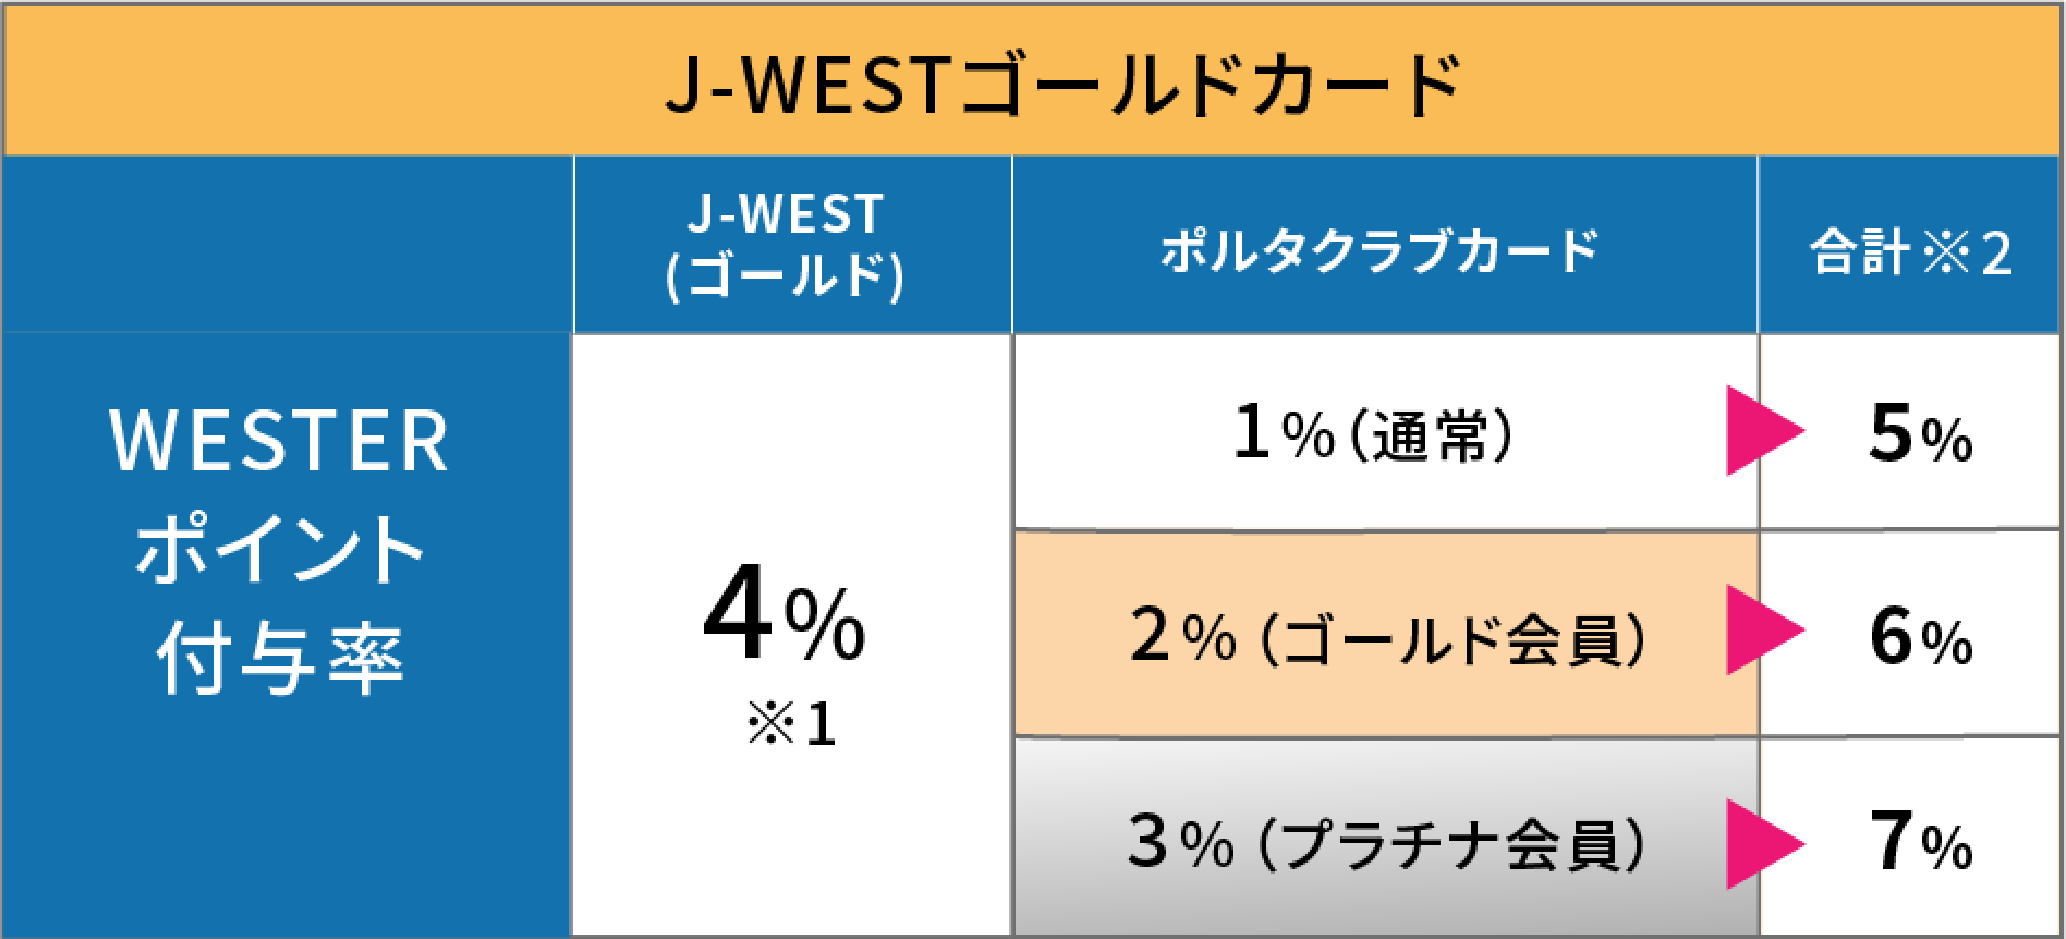 J-WESTゴールドカード WESTERポイント付与率 J-WEST4% ポルタクラブ会員カードでさらに1〜3% 合計5〜7%